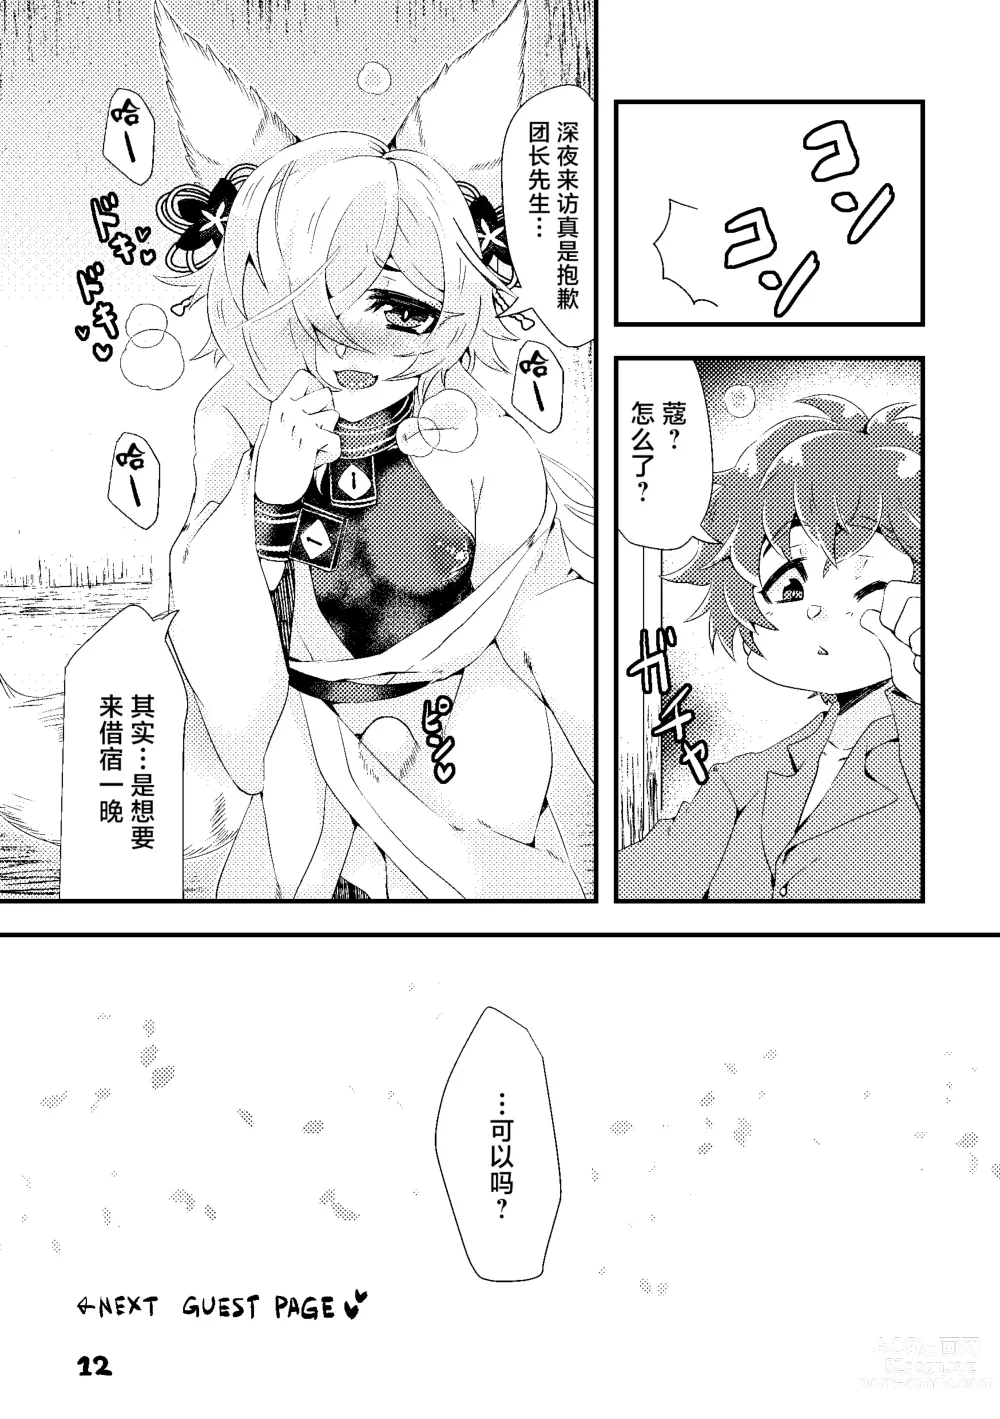 Page 12 of doujinshi Kou-kun to Mitsugetsu